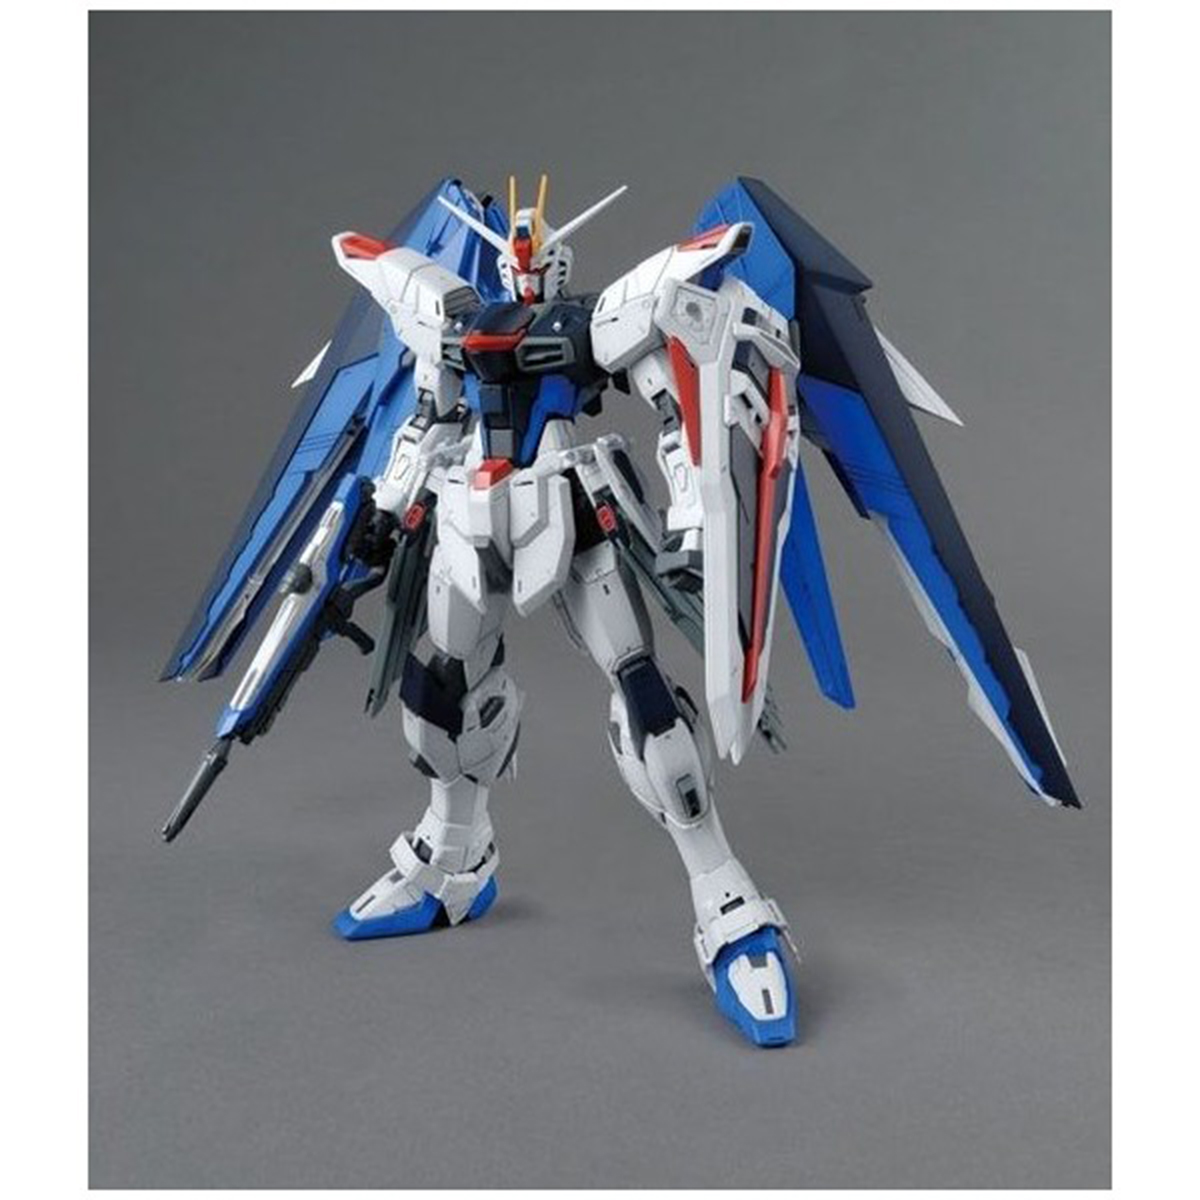 Bandai Gundam Fredom Gundam ZAFT Mobile Suit ZGMF-X10A MG 1/100 Scale  5061611 2316367